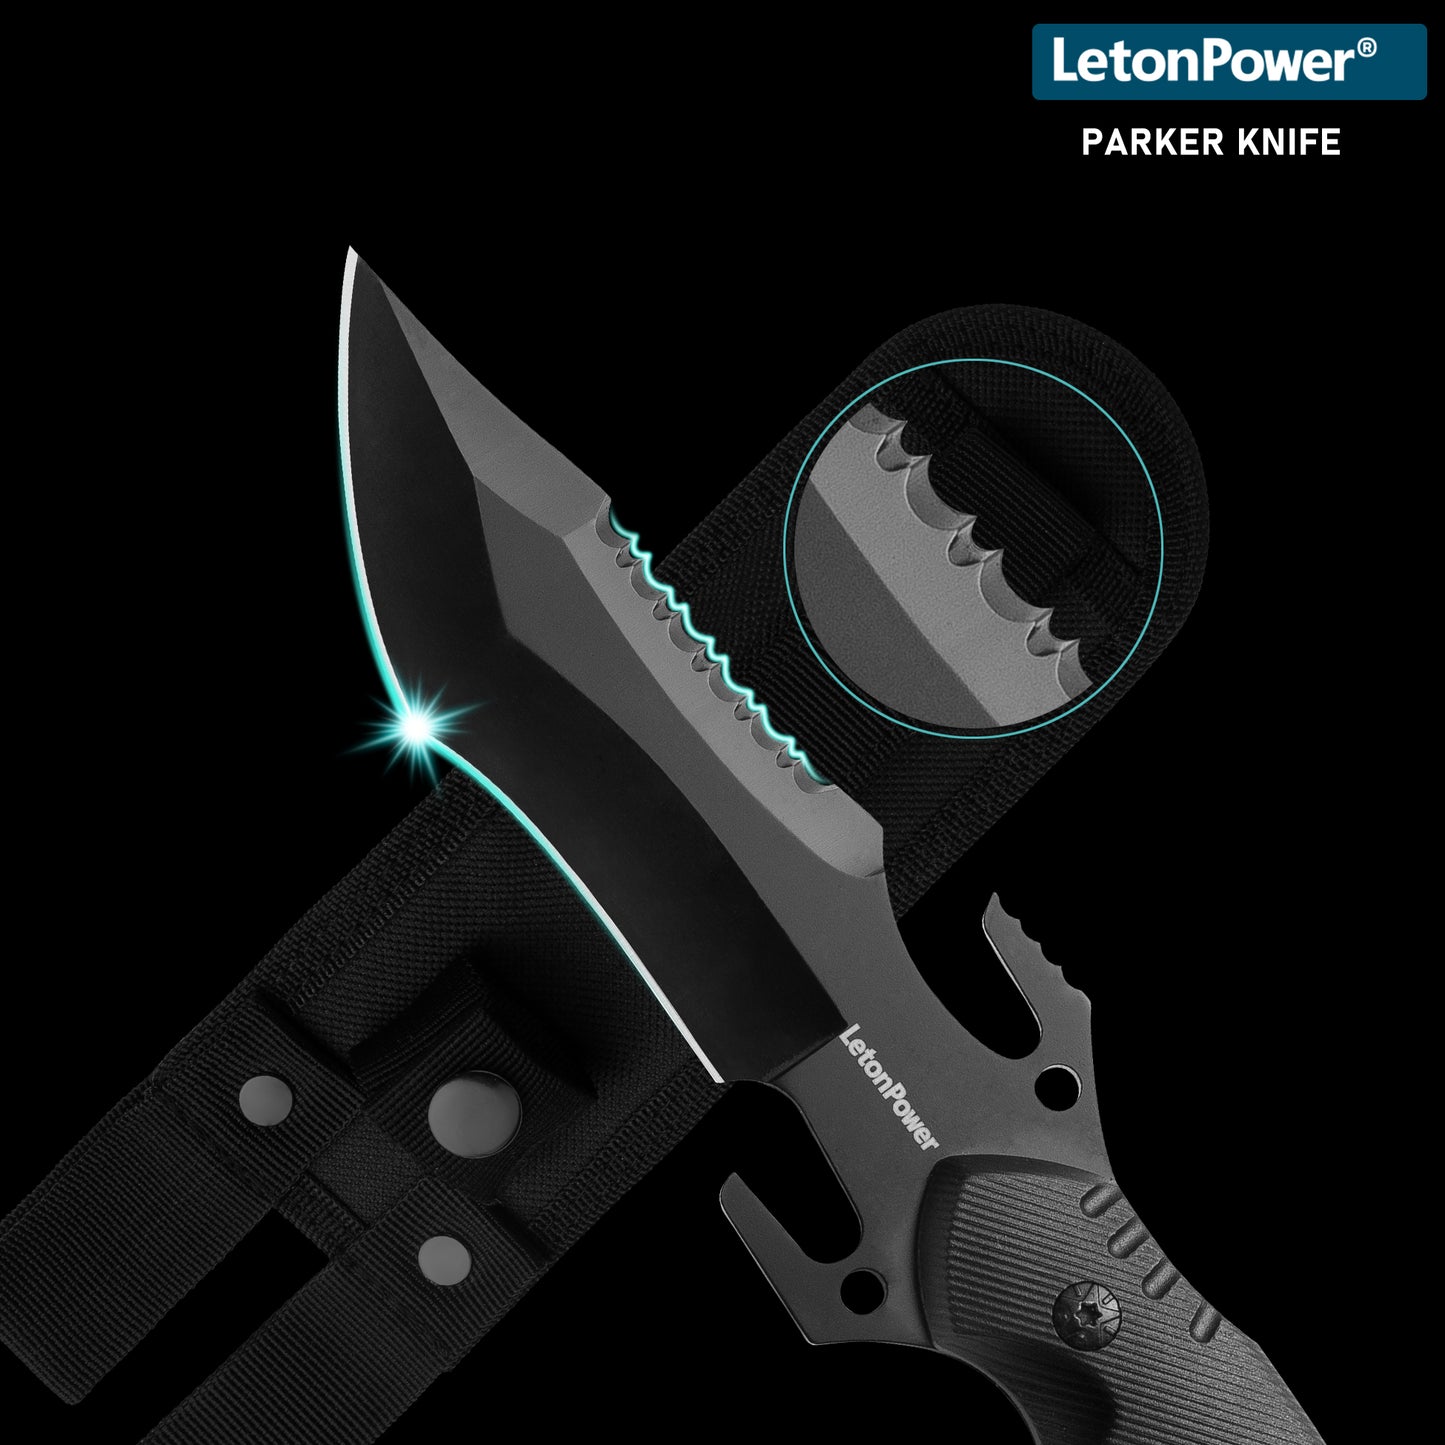 LetonPower Professional dive knife, Parker Knife diving knife, scuba knife,scuba diving knife,diver knife,outdoor knife,tactical knives,knives for men